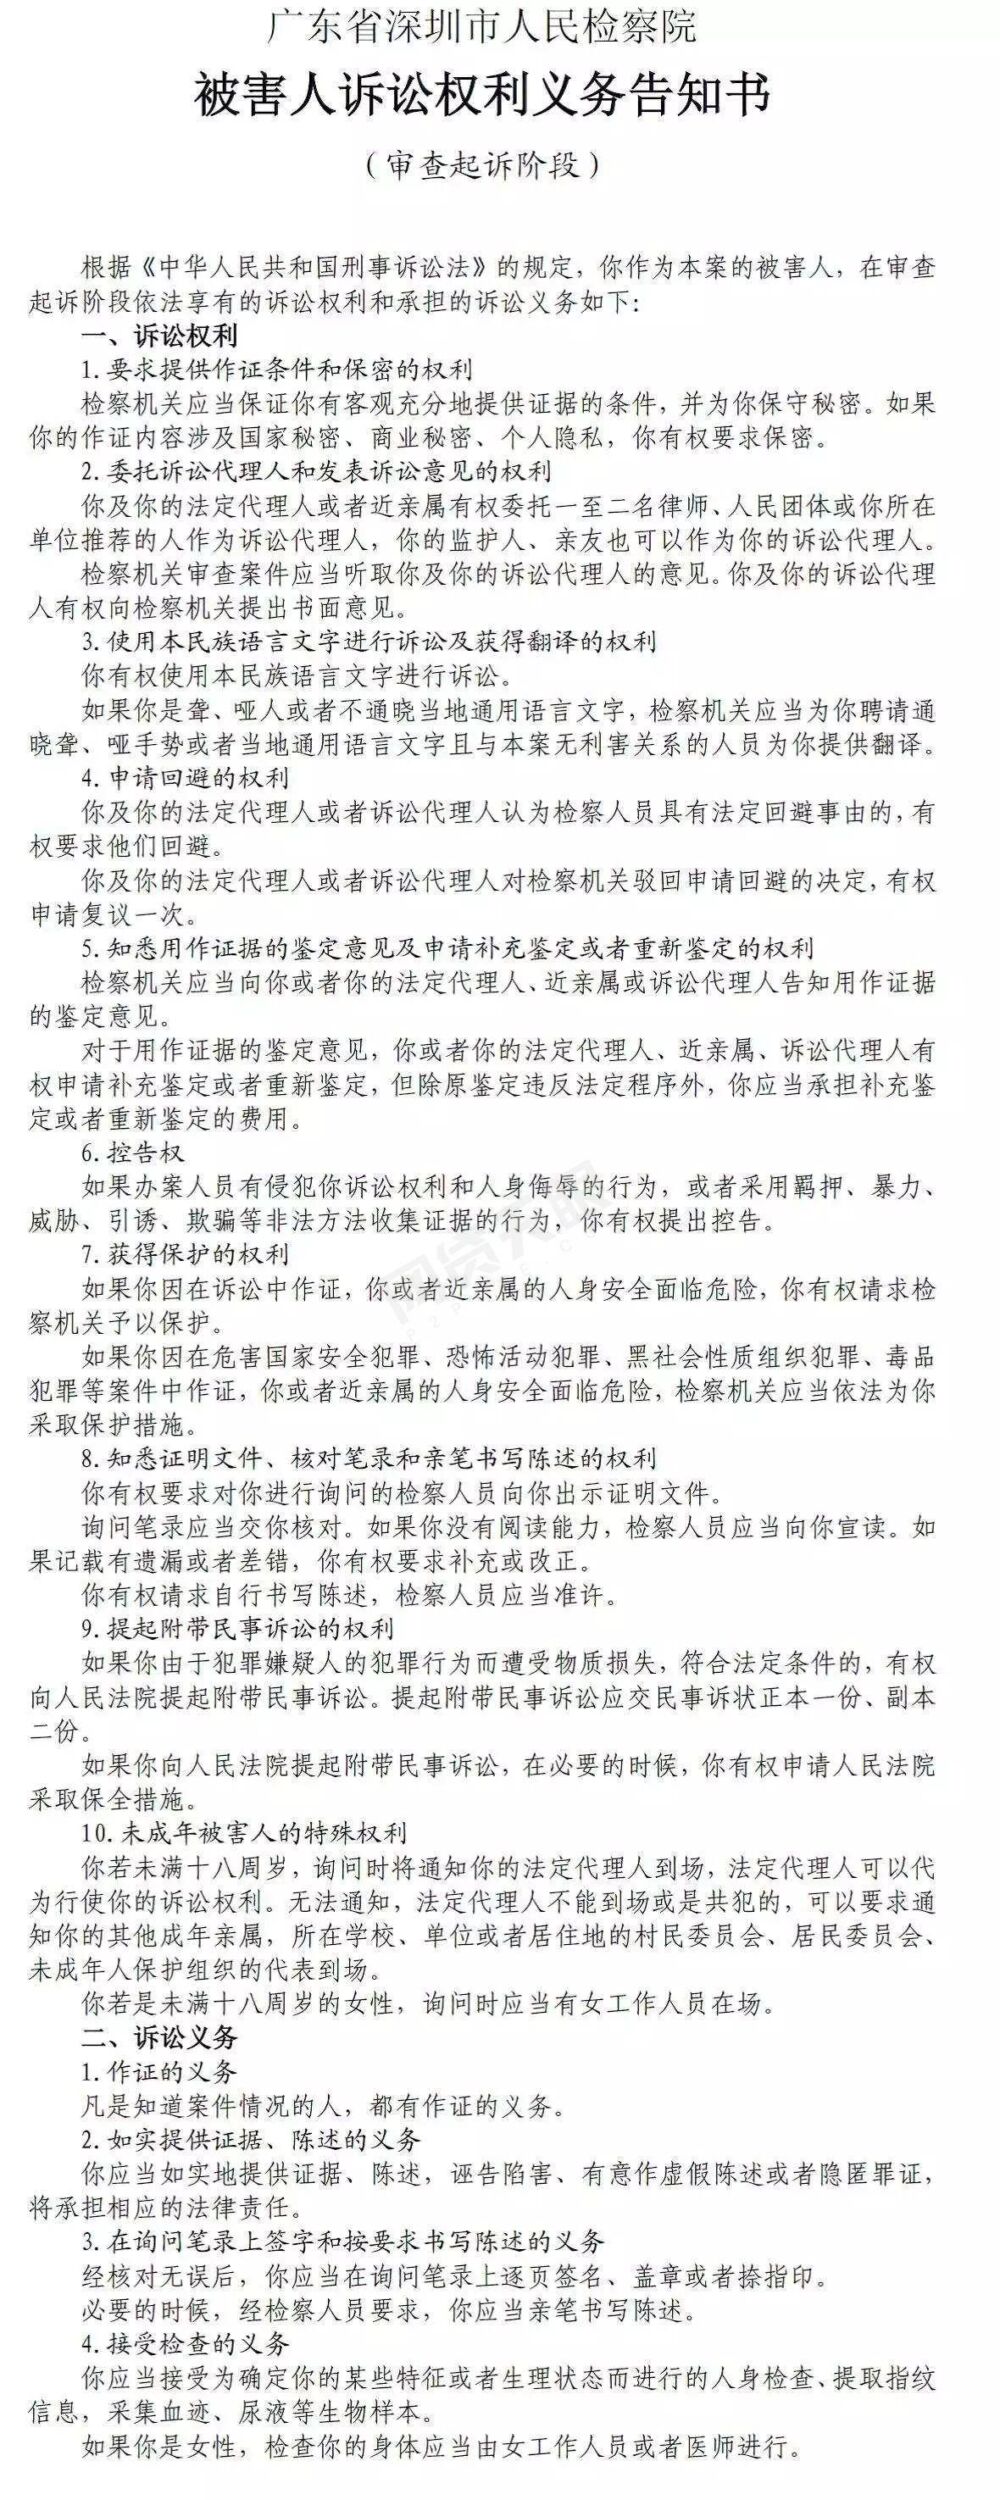 钱贷网涉集资诈骗被审查起诉 深圳今年已移交至少4件P2P案件